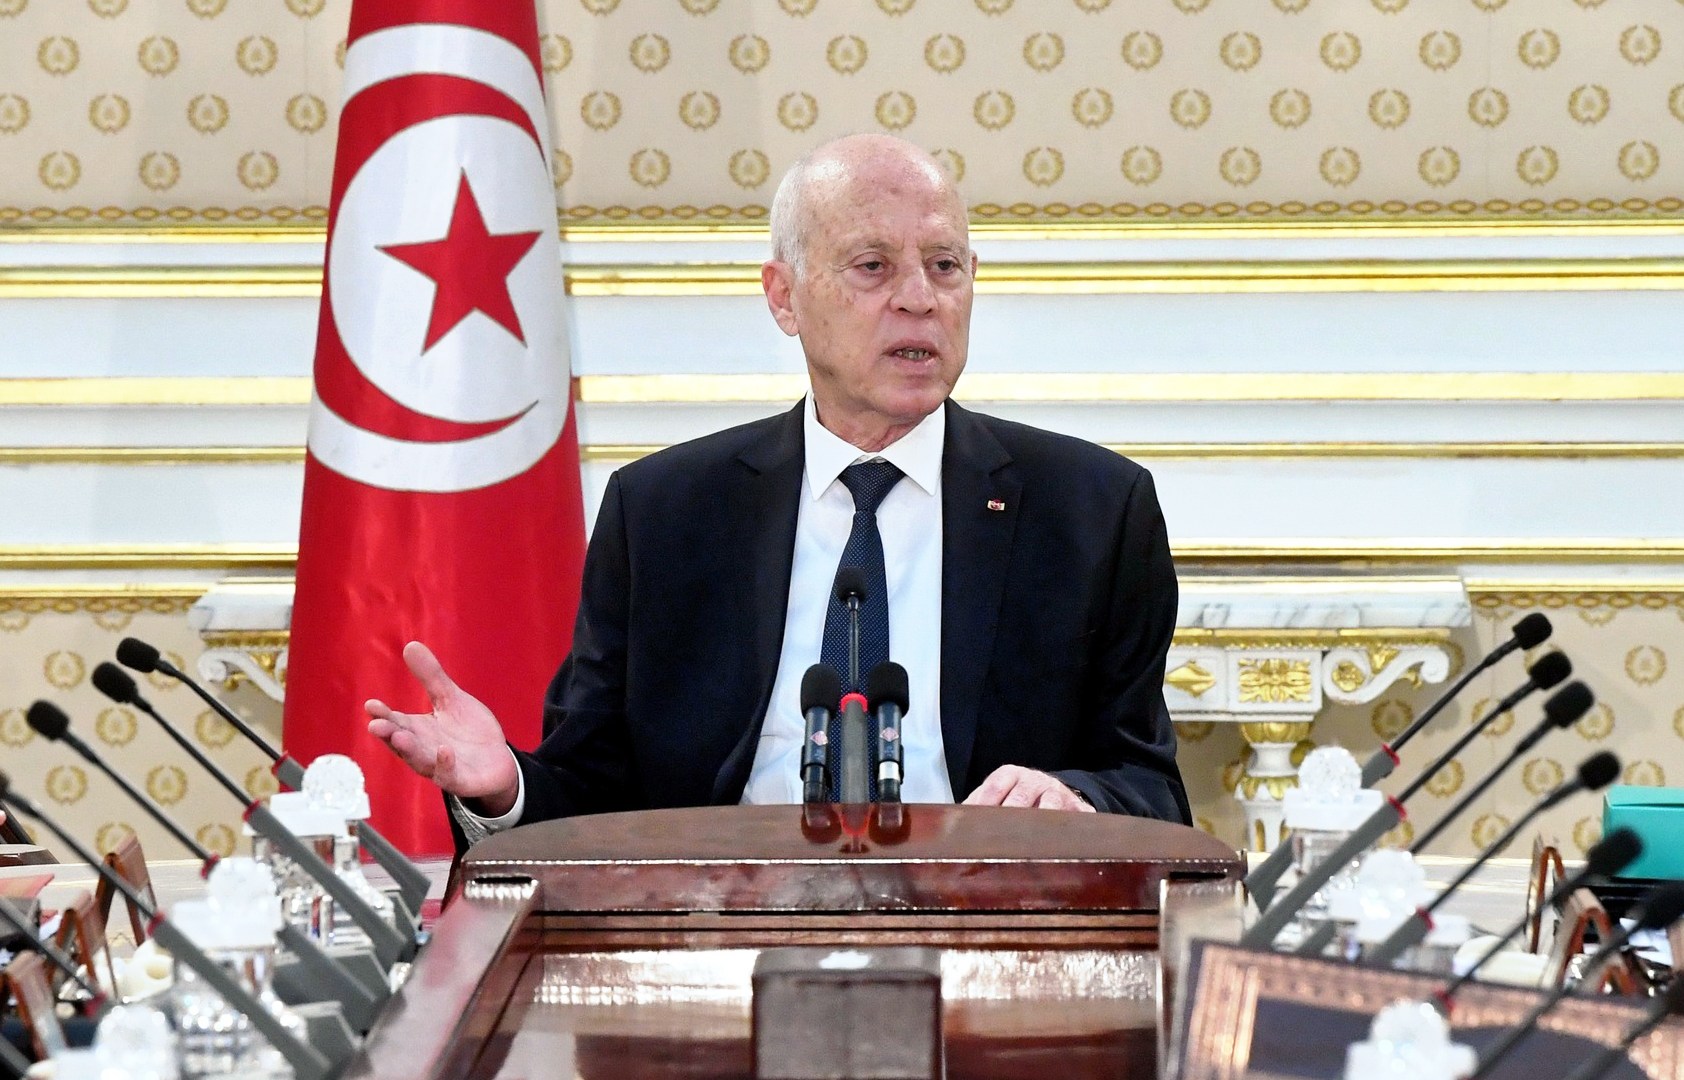 بُعيد اتهام سعيّد لنشطاء بالخيانة.. توقيف حقوقية تونسية لـ”جرائم مالية” | أخبار – البوكس نيوز